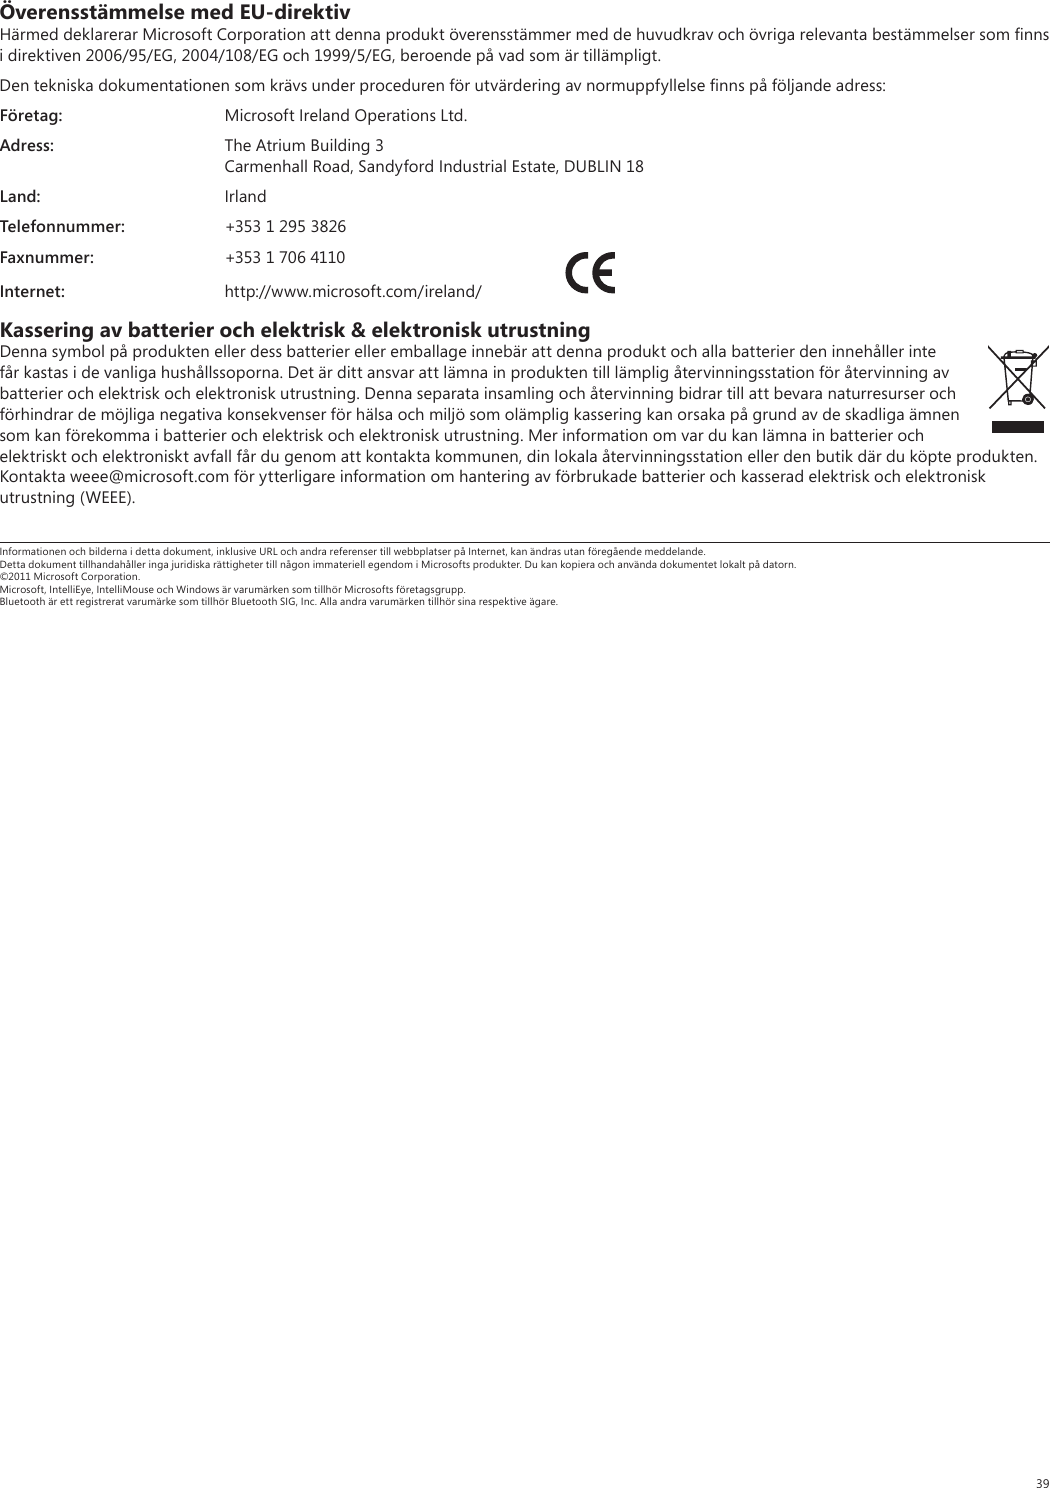 39Överensstämmelse med EU-direktivHärmed deklarerar Microsoft Corporation att denna produkt överensstämmer med de huvudkrav och övriga relevanta bestämmelser som ﬁnns i direktiven 2006/95/EG, 2004/108/EG och 1999/5/EG, beroende på vad som är tillämpligt.Den tekniska dokumentationen som krävs under proceduren för utvärdering av normuppfyllelse ﬁnns på följande adress:Företag:  Microsoft Ireland Operations Ltd.Adress:  The Atrium Building 3  Carmenhall Road, Sandyford Industrial Estate, DUBLIN 18Land: IrlandTelefonnummer:  +353 1 295 3826Faxnummer:  +353 1 706 4110Internet: http://www.microsoft.com/ireland/ Kassering av batterier och elektrisk &amp; elektronisk utrustningDenna symbol på produkten eller dess batterier eller emballage innebär att denna produkt och alla batterier den innehåller inte får kastas i de vanliga hushållssoporna. Det är ditt ansvar att lämna in produkten till lämplig återvinningsstation för återvinning av batterier och elektrisk och elektronisk utrustning. Denna separata insamling och återvinning bidrar till att bevara naturresurser och förhindrar de möjliga negativa konsekvenser för hälsa och miljö som olämplig kassering kan orsaka på grund av de skadliga ämnen som kan förekomma i batterier och elektrisk och elektronisk utrustning. Mer information om var du kan lämna in batterier och elektriskt och elektroniskt avfall får du genom att kontakta kommunen, din lokala återvinningsstation eller den butik där du köpte produkten. Kontakta weee@microsoft.com för ytterligare information om hantering av förbrukade batterier och kasserad elektrisk och elektronisk utrustning (WEEE).Informationen och bilderna i detta dokument, inklusive URL och andra referenser till webbplatser på Internet, kan ändras utan föregående meddelande. Detta dokument tillhandahåller inga juridiska rättigheter till någon immateriell egendom i Microsofts produkter. Du kan kopiera och använda dokumentet lokalt på datorn. ©2011 Microsoft Corporation. Microsoft, IntelliEye, IntelliMouse och Windows är varumärken som tillhör Microsofts företagsgrupp. Bluetooth är ett registrerat varumärke som tillhör Bluetooth SIG, Inc. Alla andra varumärken tillhör sina respektive ägare.